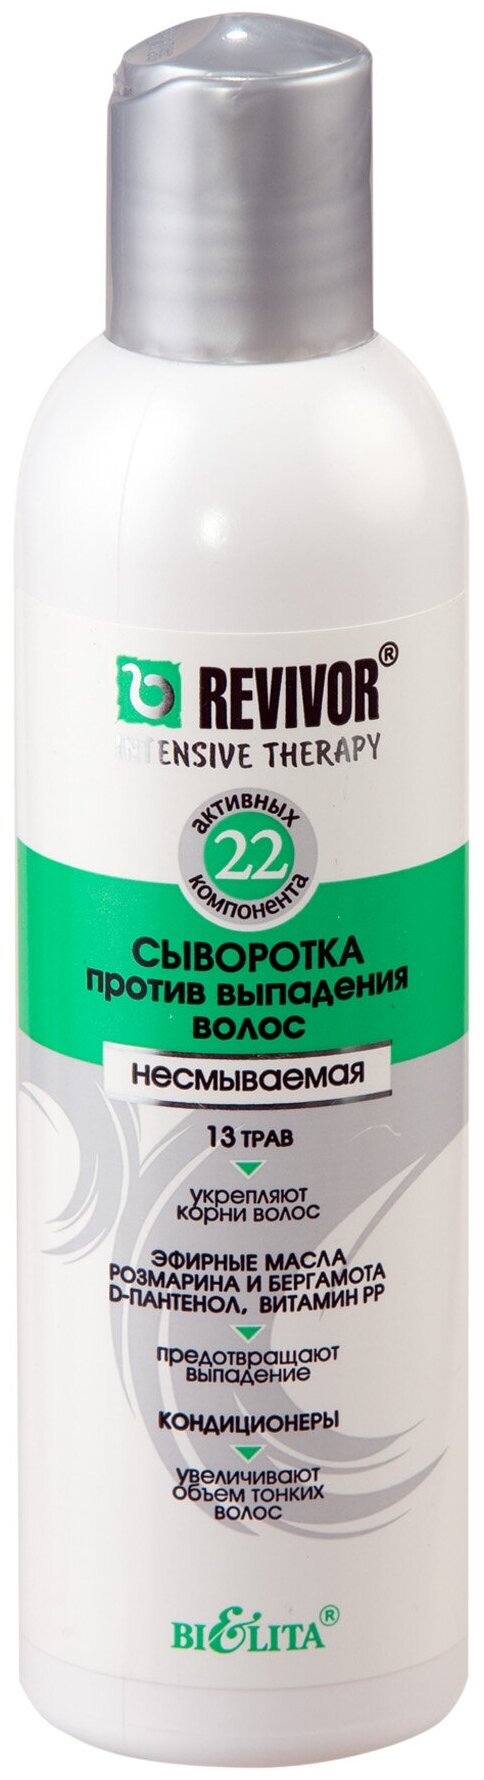 Bielita Revivor Intensive Therapy Сыворотка против выпадения волос несмываемая для волос, 200 мл